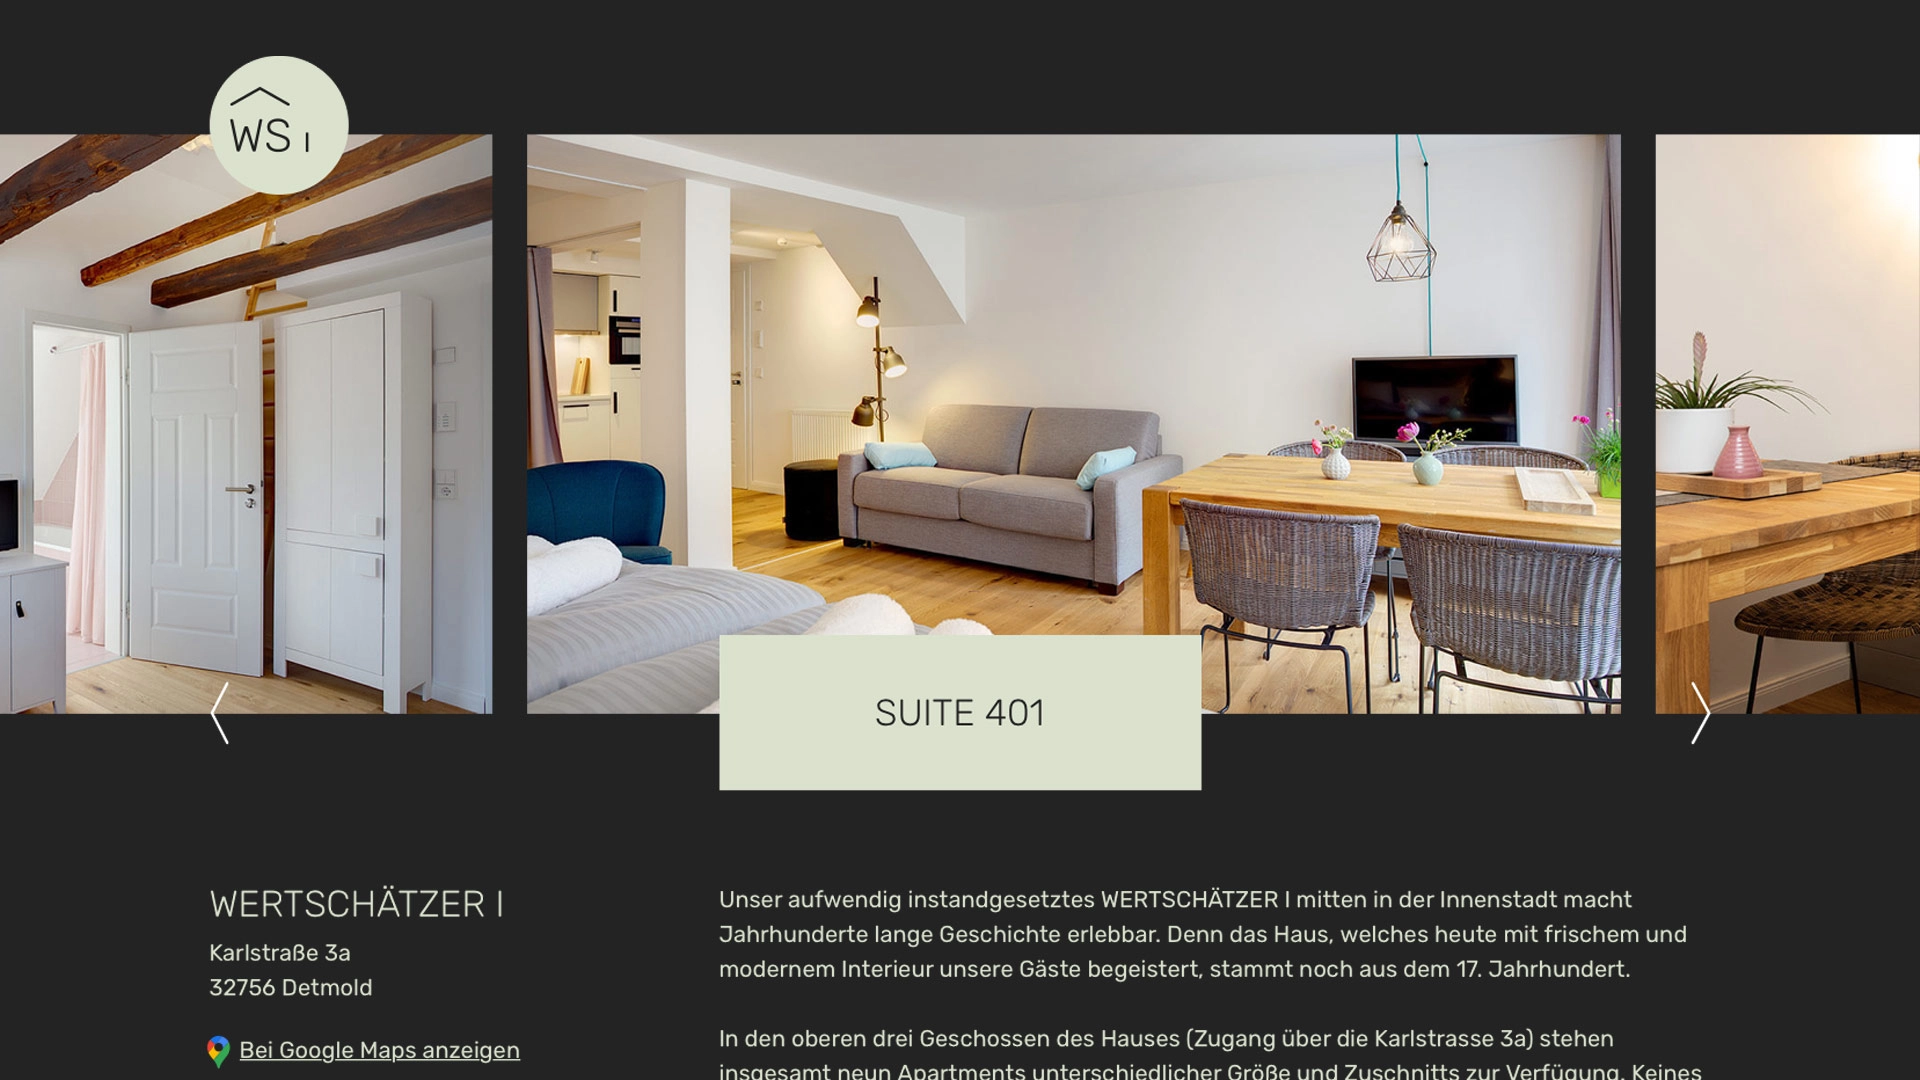 Ausschnitt der Wertschäter-Website, welcher eine Suite des Hotels zeigt